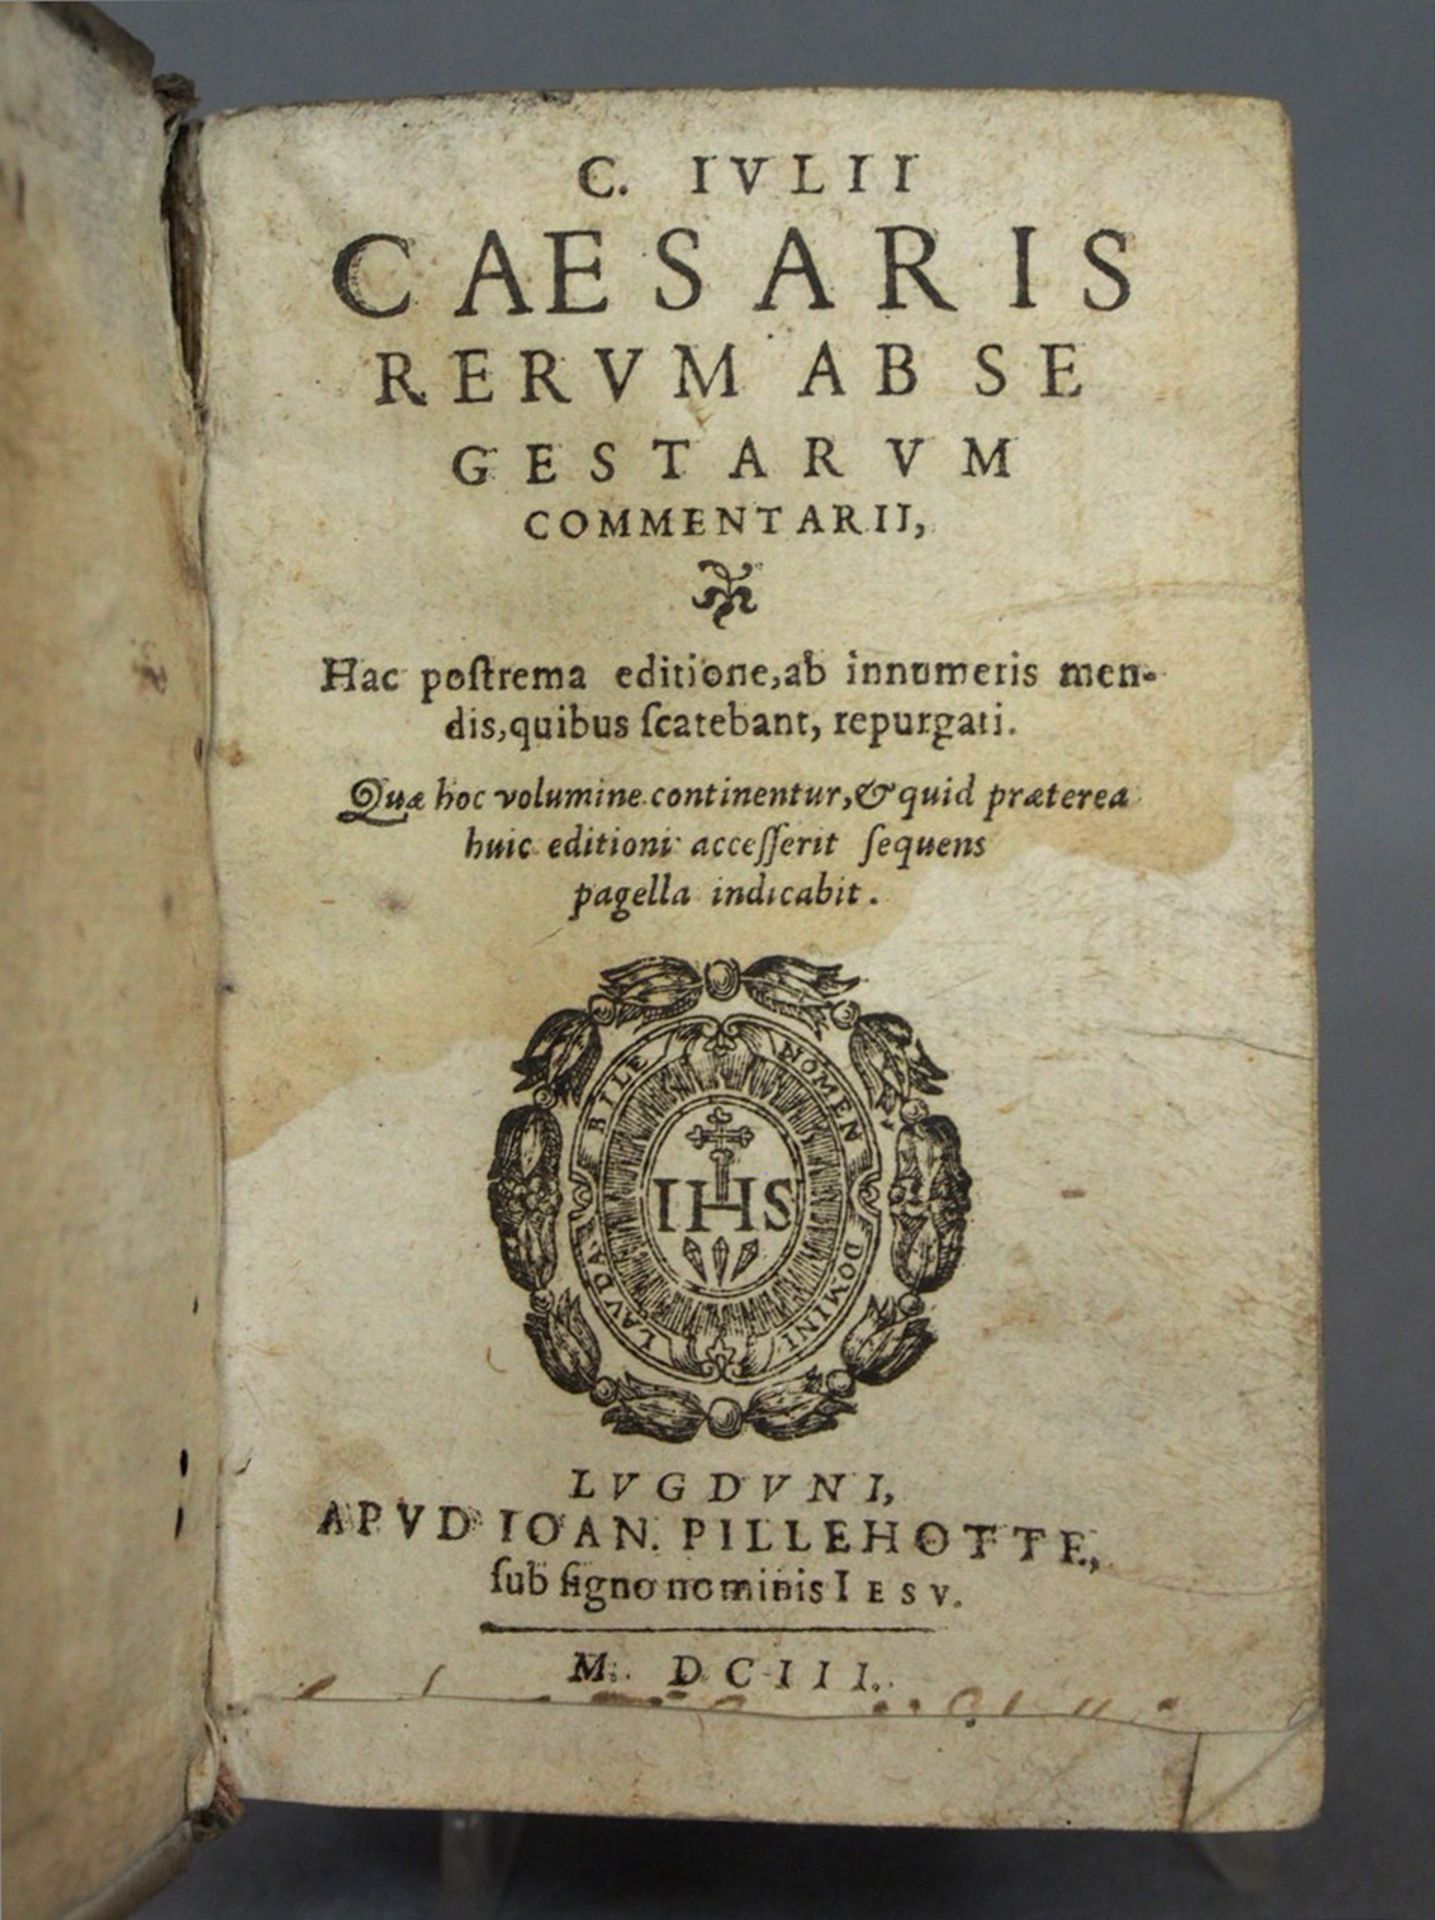 C.Iulii Caesaris Rerum ab se gestarum commentarii